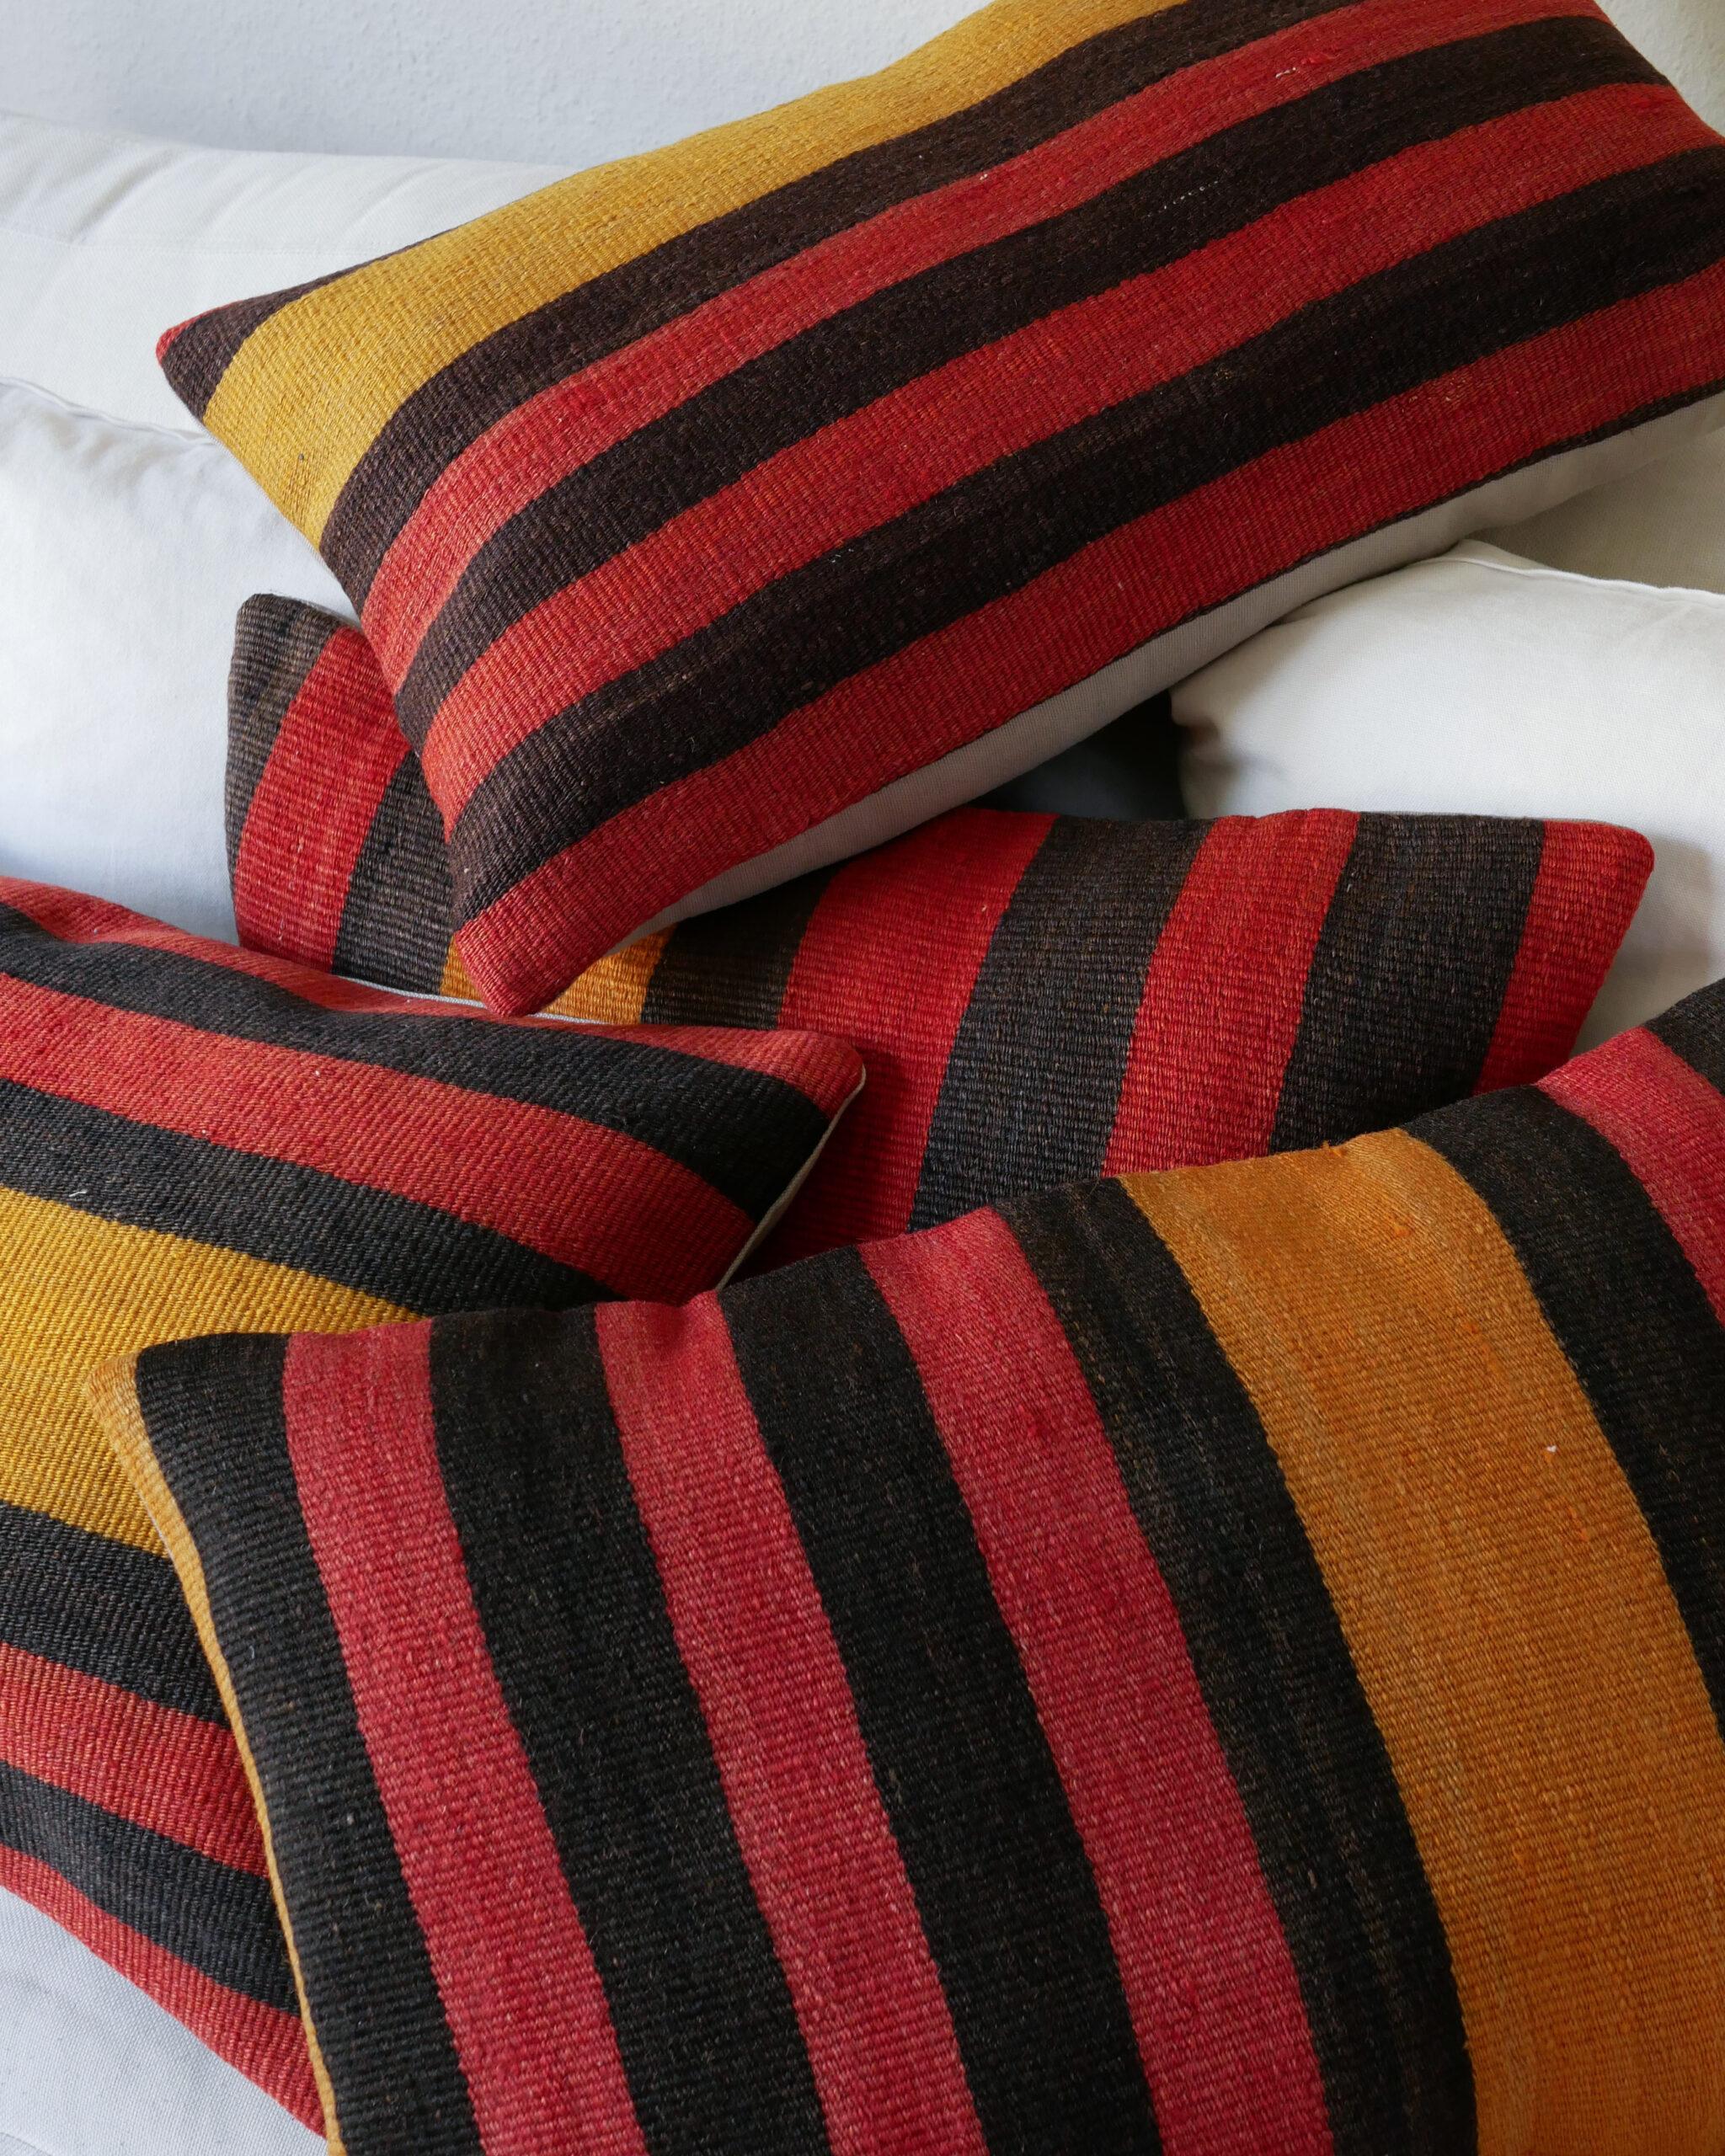 Kelim-Kissen 60 x 40 cm mit Streifen in Schwarz, Rot und Goldgelb